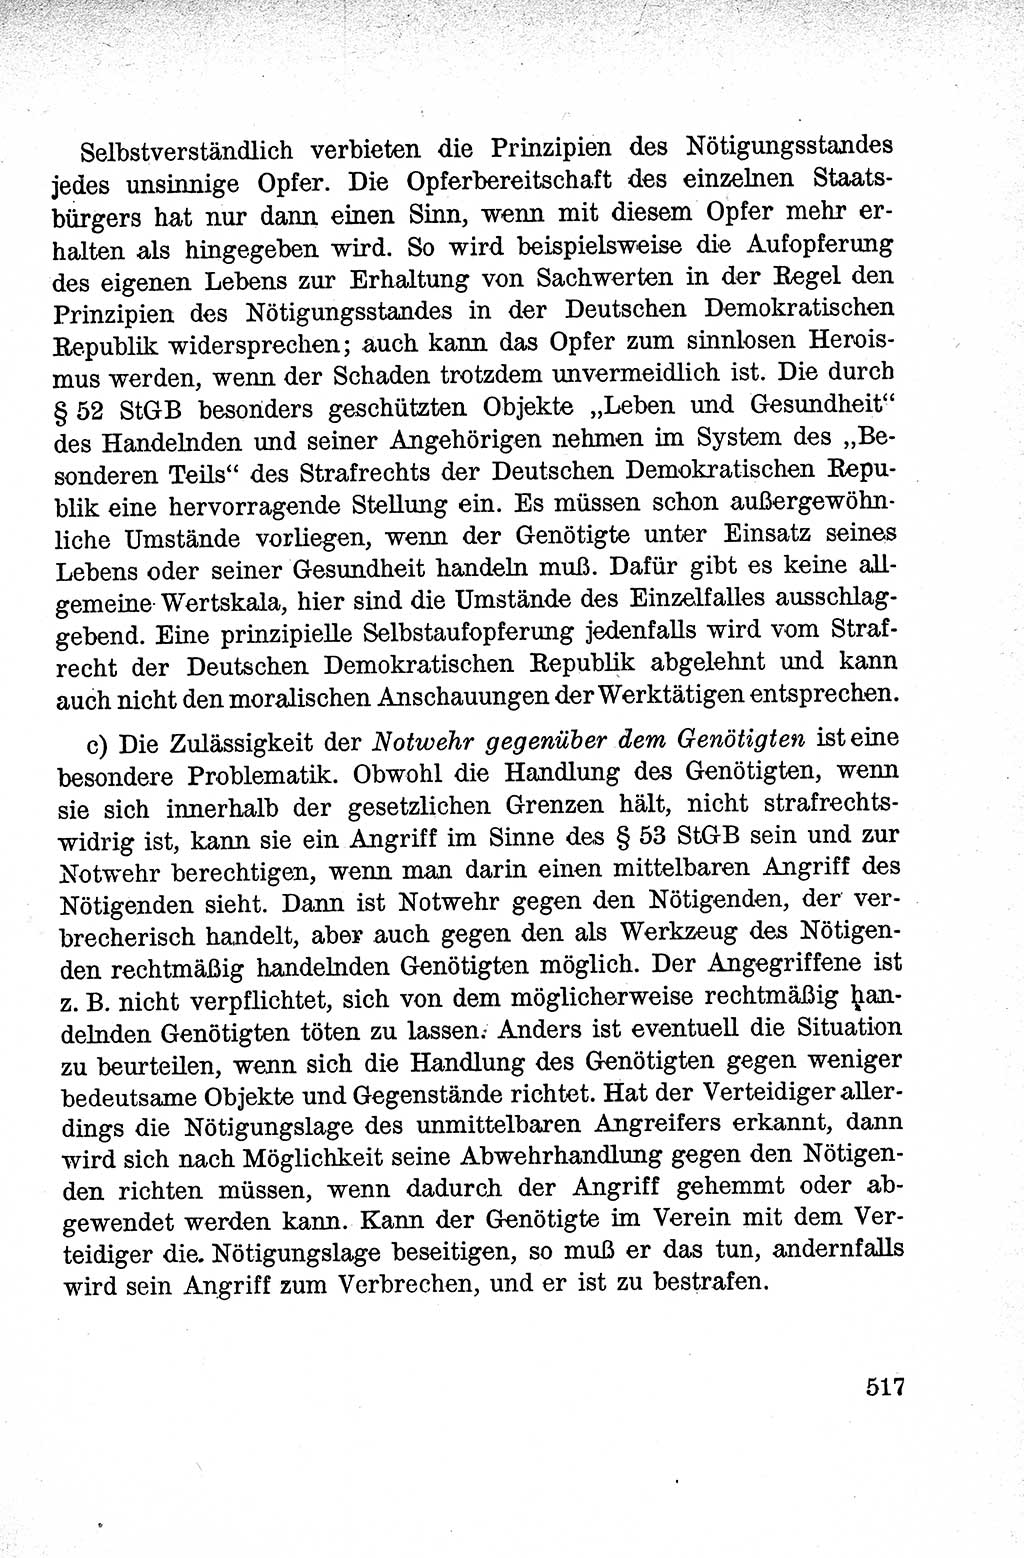 Lehrbuch des Strafrechts der Deutschen Demokratischen Republik (DDR), Allgemeiner Teil 1959, Seite 517 (Lb. Strafr. DDR AT 1959, S. 517)